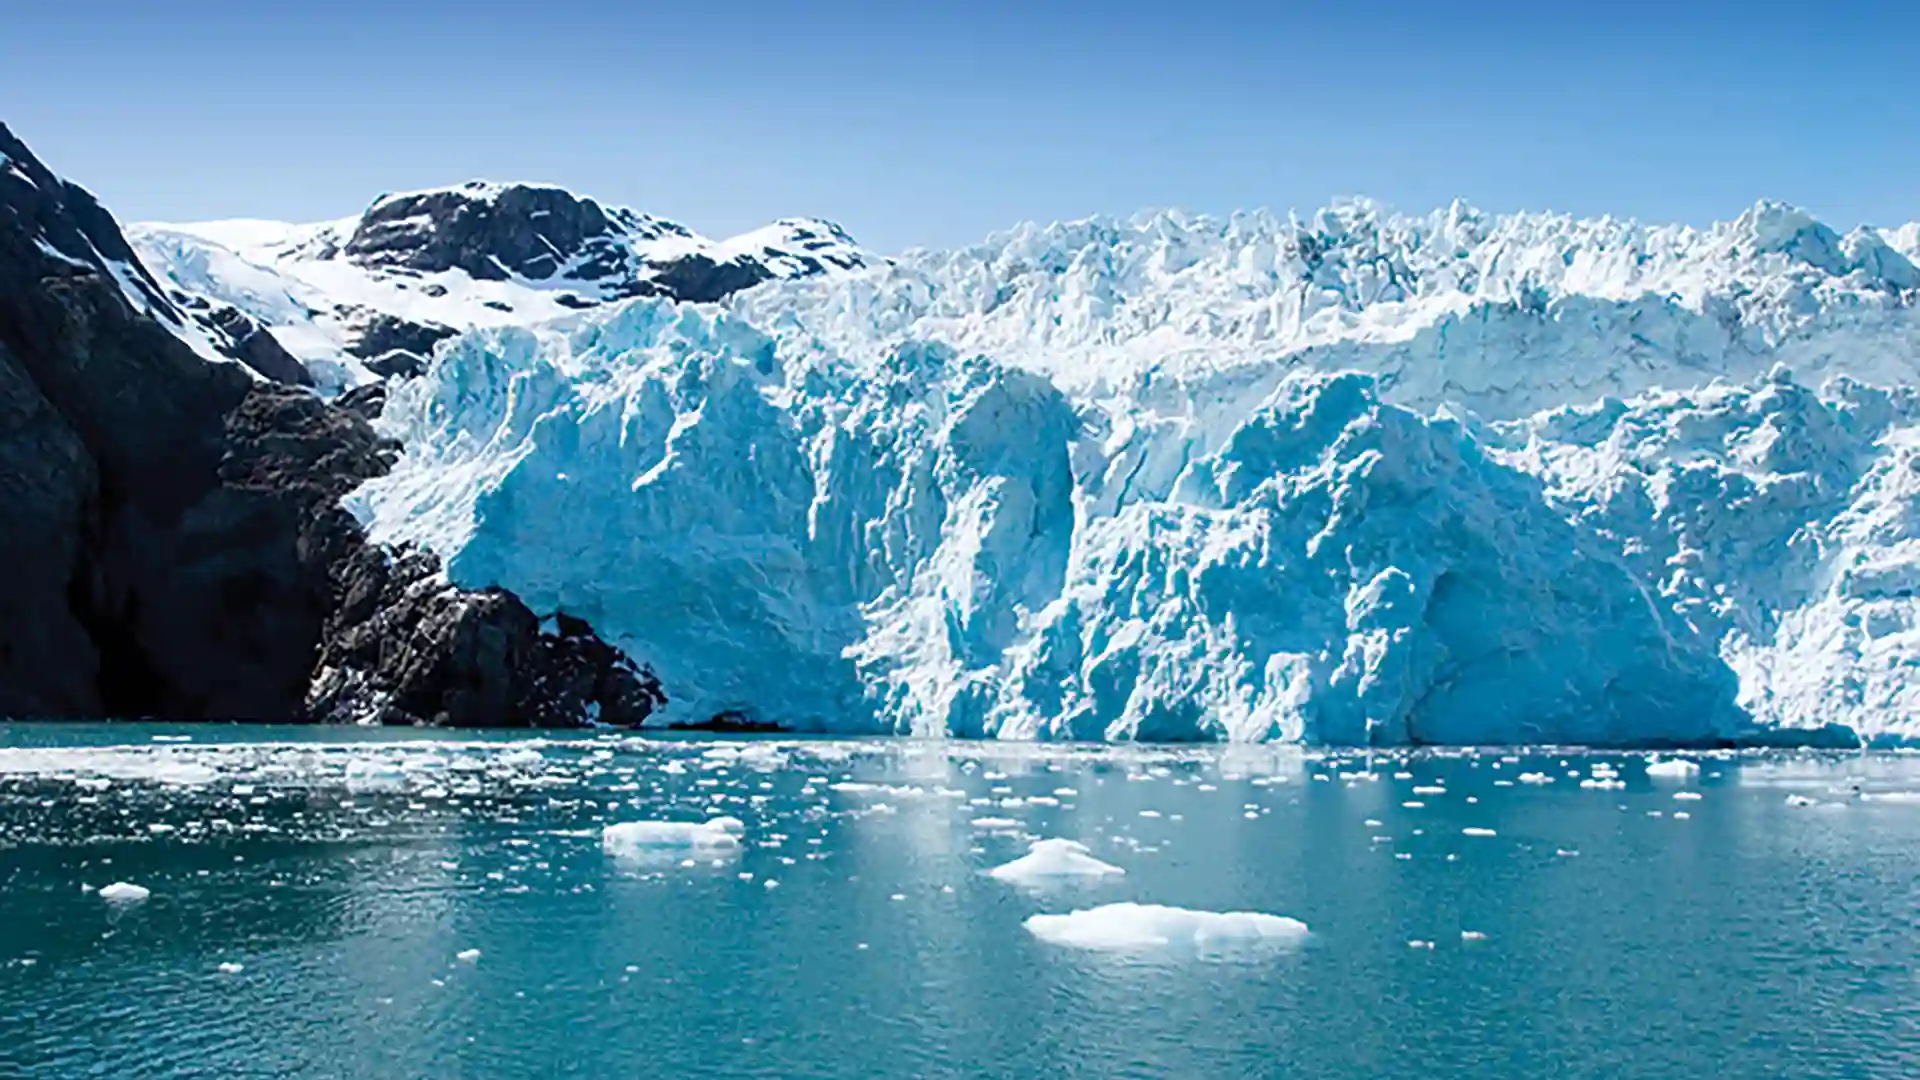 View of icy-blue glacier in Alaska.